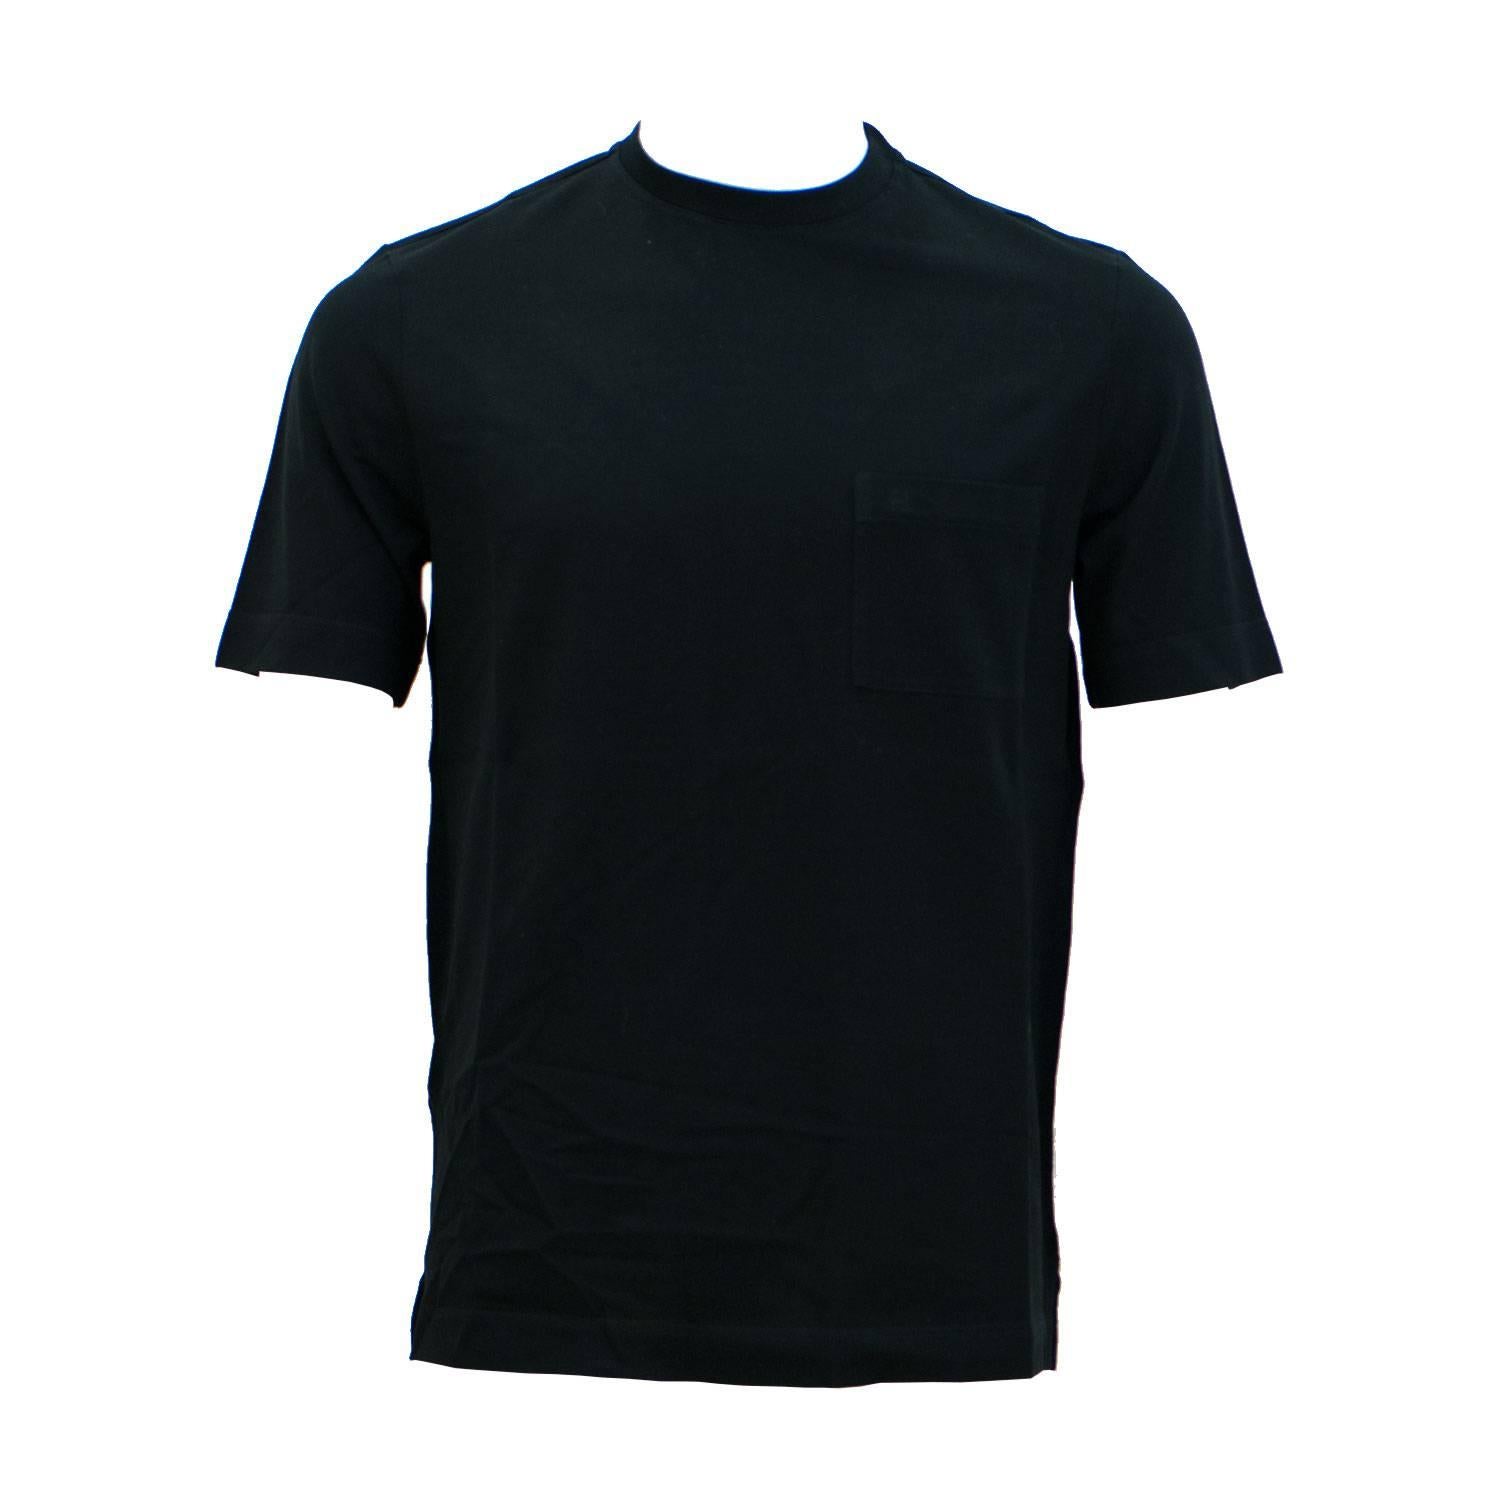 Hermes T-Shirt Ras du Cou Pique de Cotton Size M Color Noir 2016. For Sale